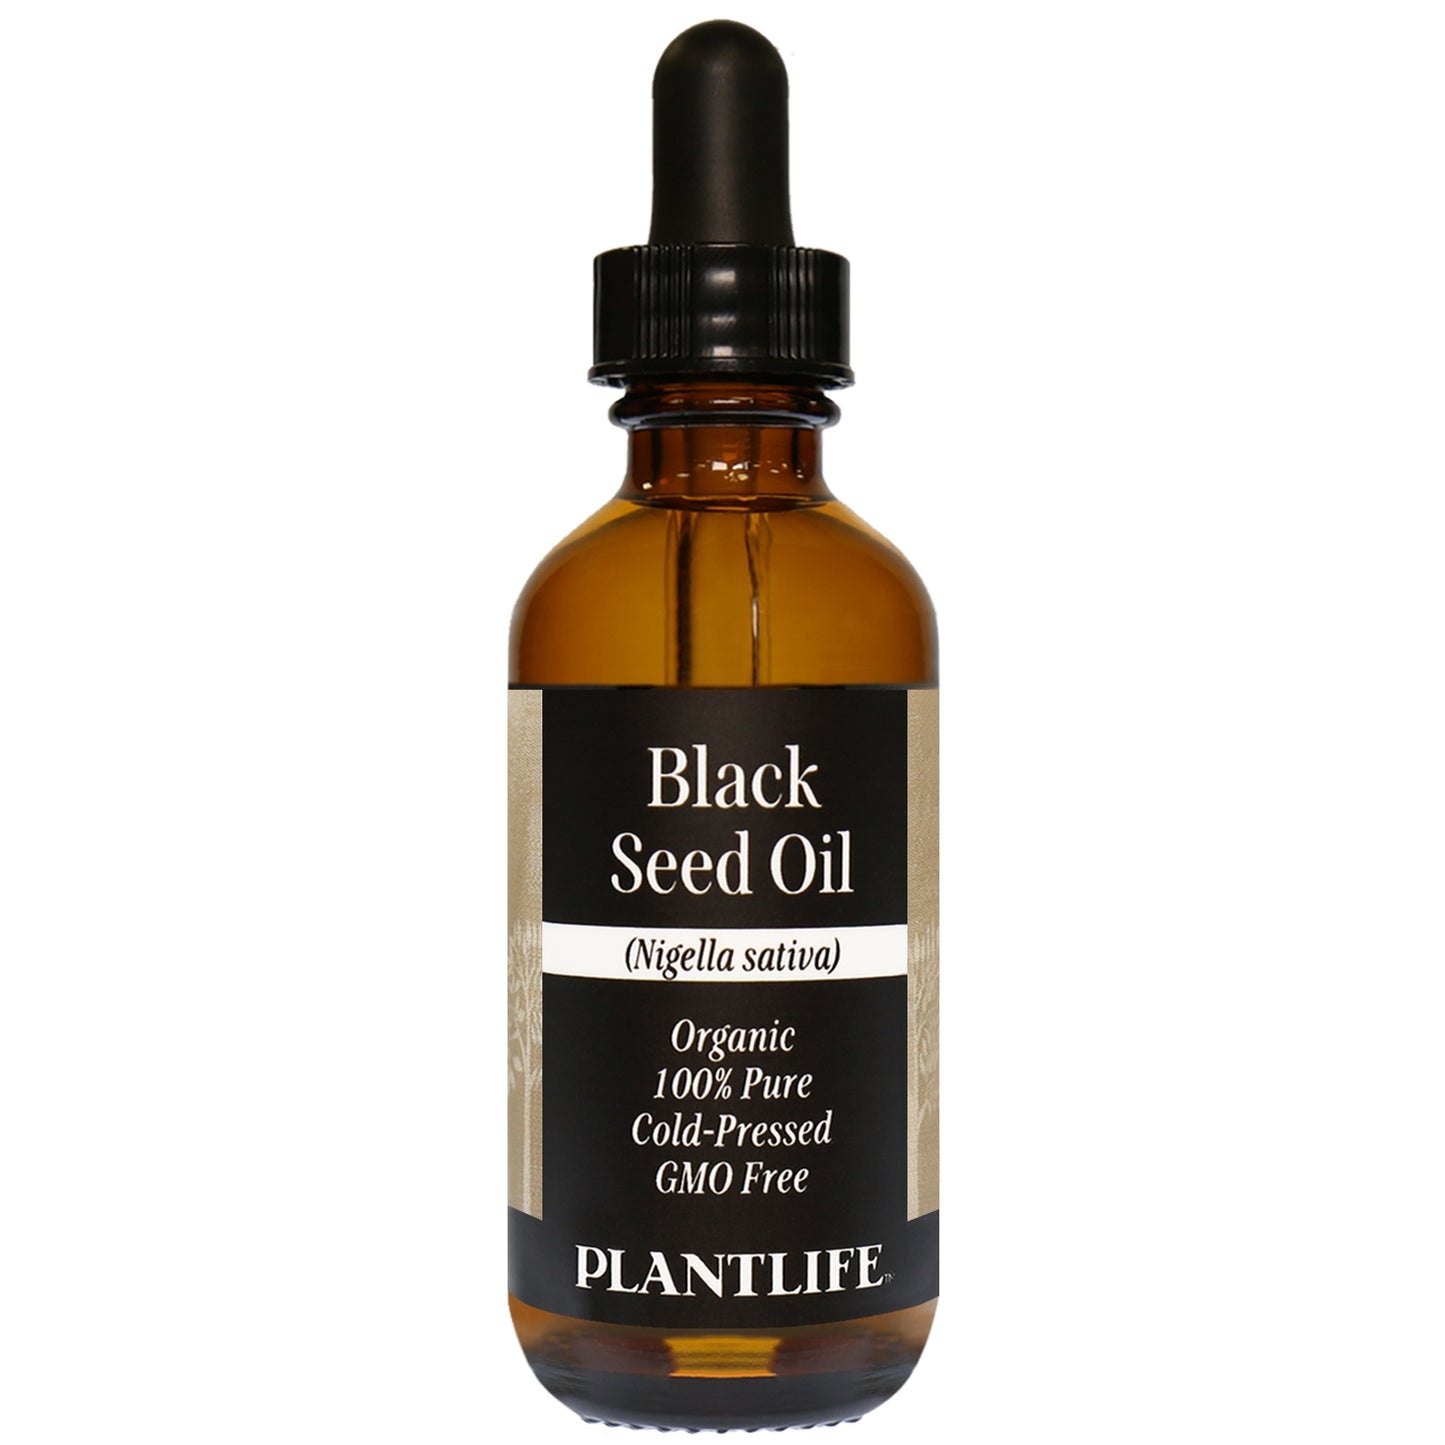 Black seed oil 2oz